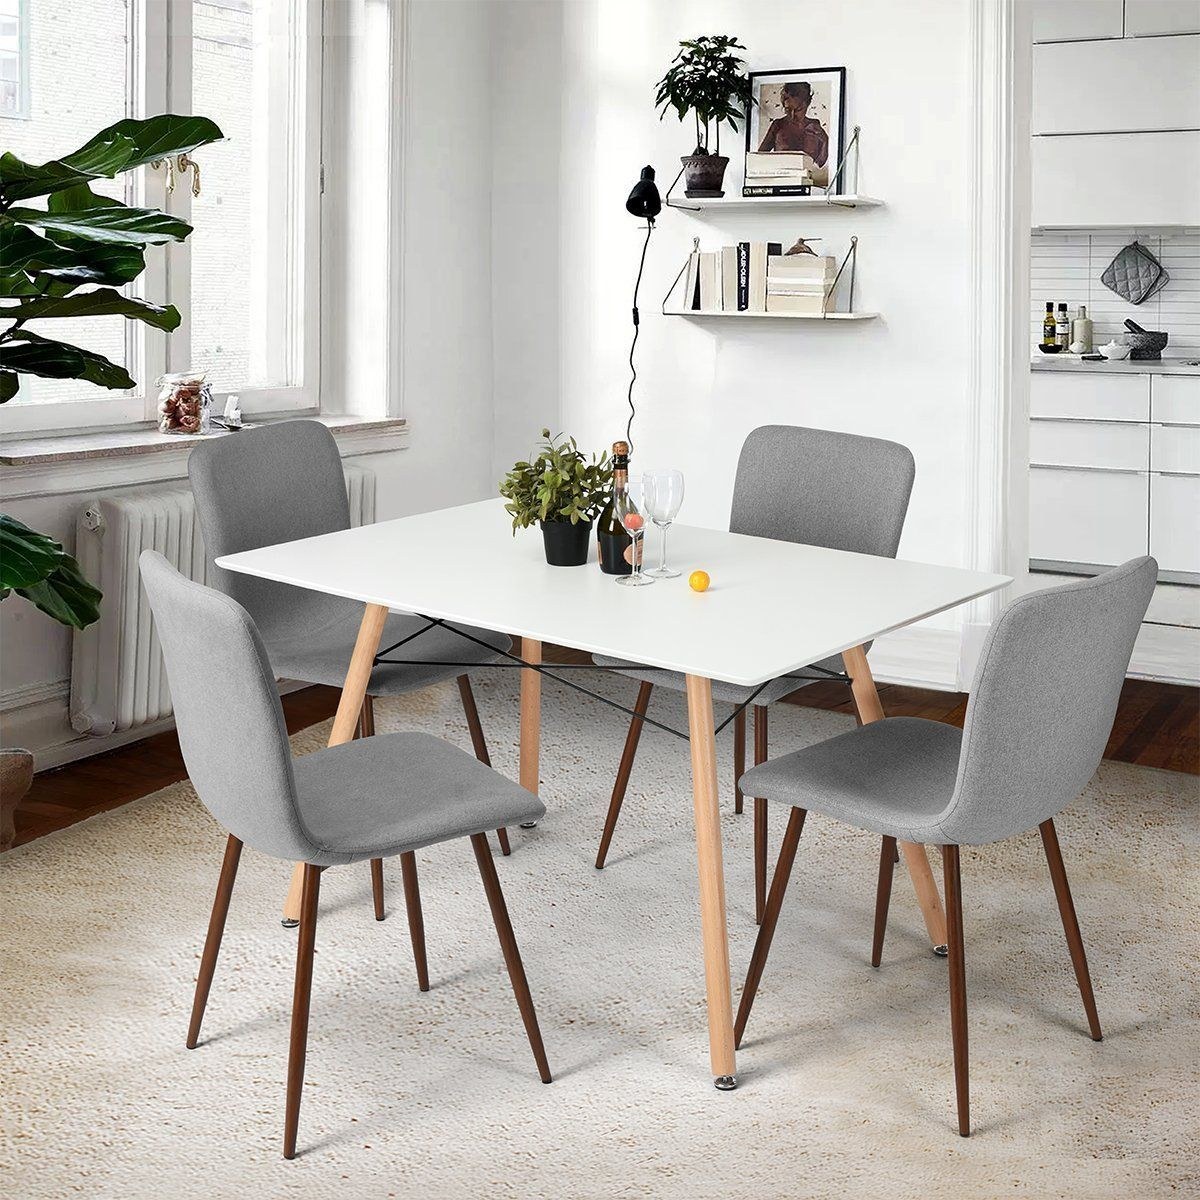 Лучшие стулья для кухни. Скандинавские стулья для кухни Norden Mid Century Design Dining Chairs. Обеденный комплект МИД сенчури. Стулья МИД сенчури икеа. Стулья МИД сенчури обеденные.